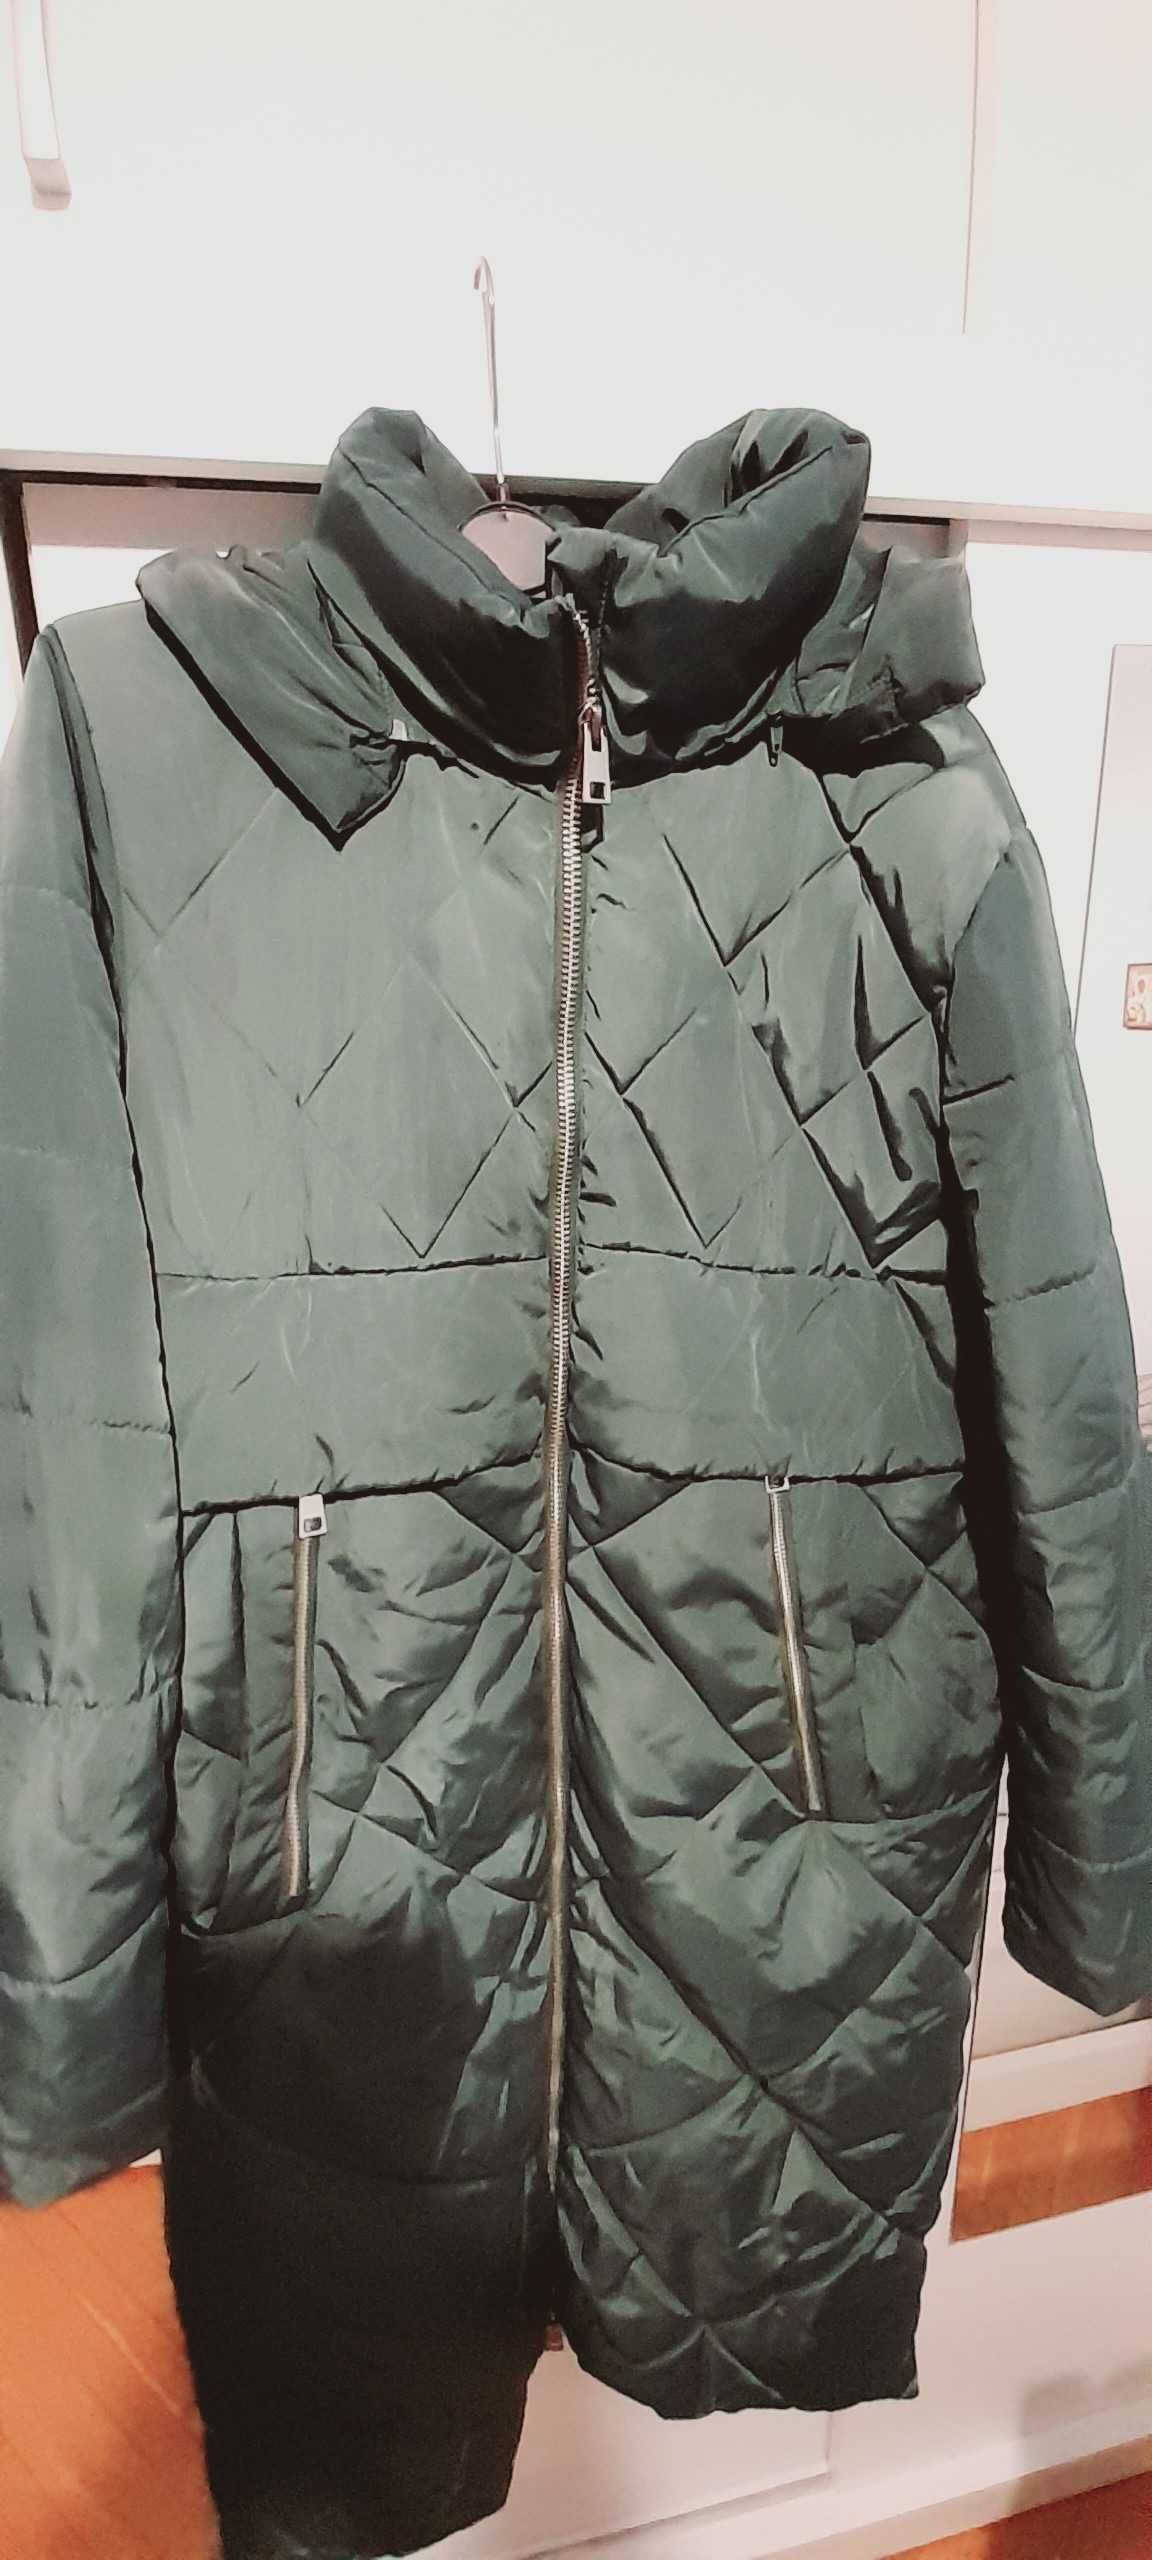 Płaszcz (kurtka) zielony pikowany XL